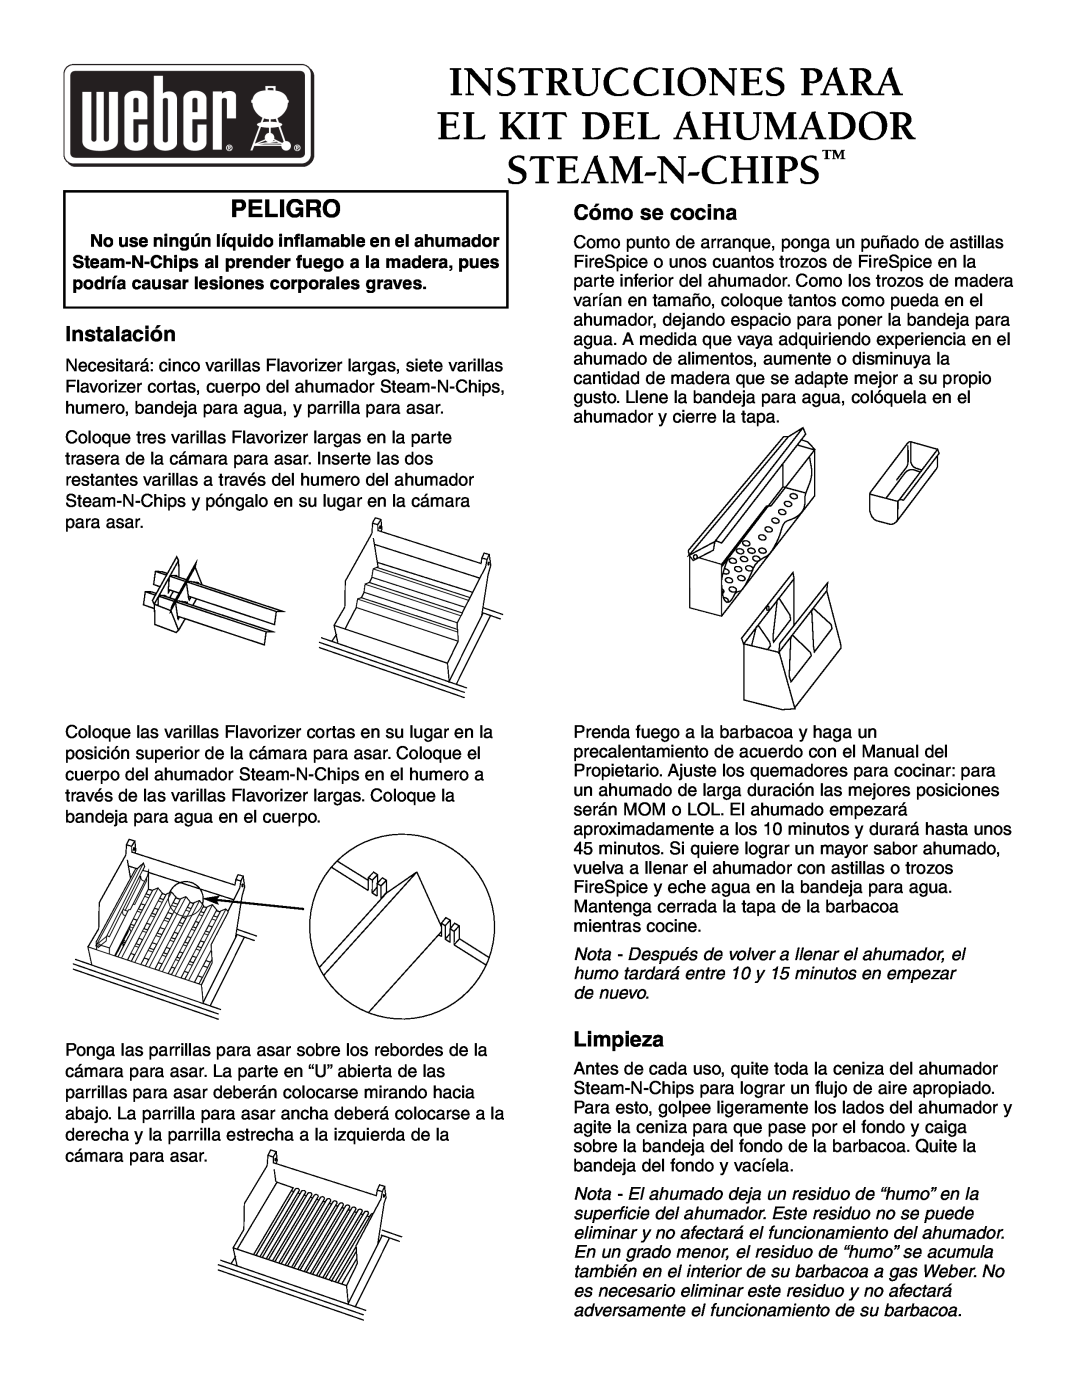 Weber Smoker Peligro, Instalación, Cómo se cocina, Limpieza, Instrucciones Para El Kit Del Ahumador Steam-N-Chips 